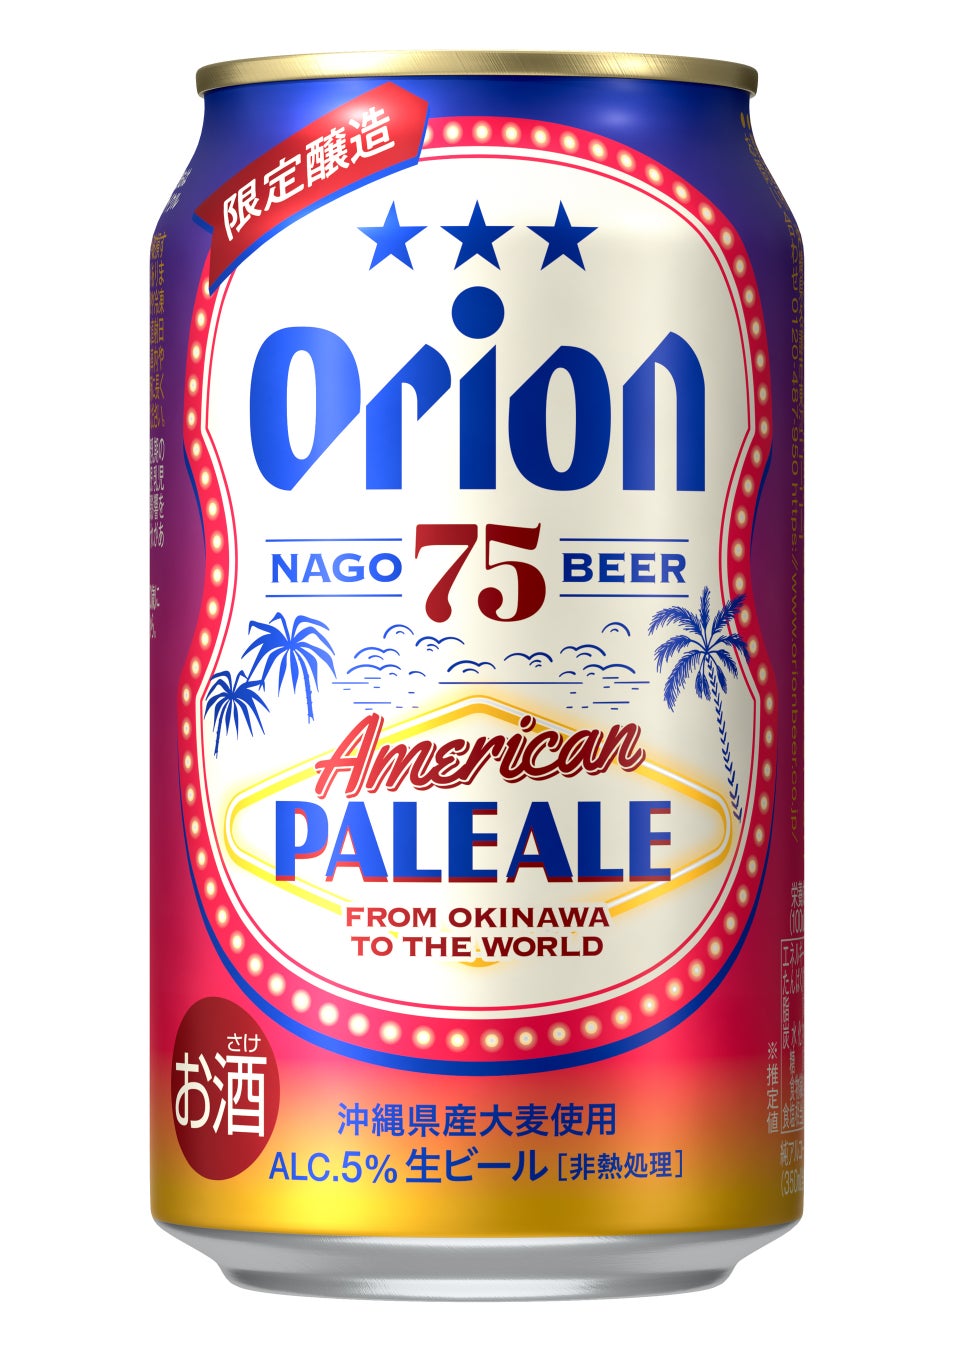 オリオンのクラフトビール「75BEER」シリーズ、「75BEER AMERICAN PALE ALE」を数量限定で発売